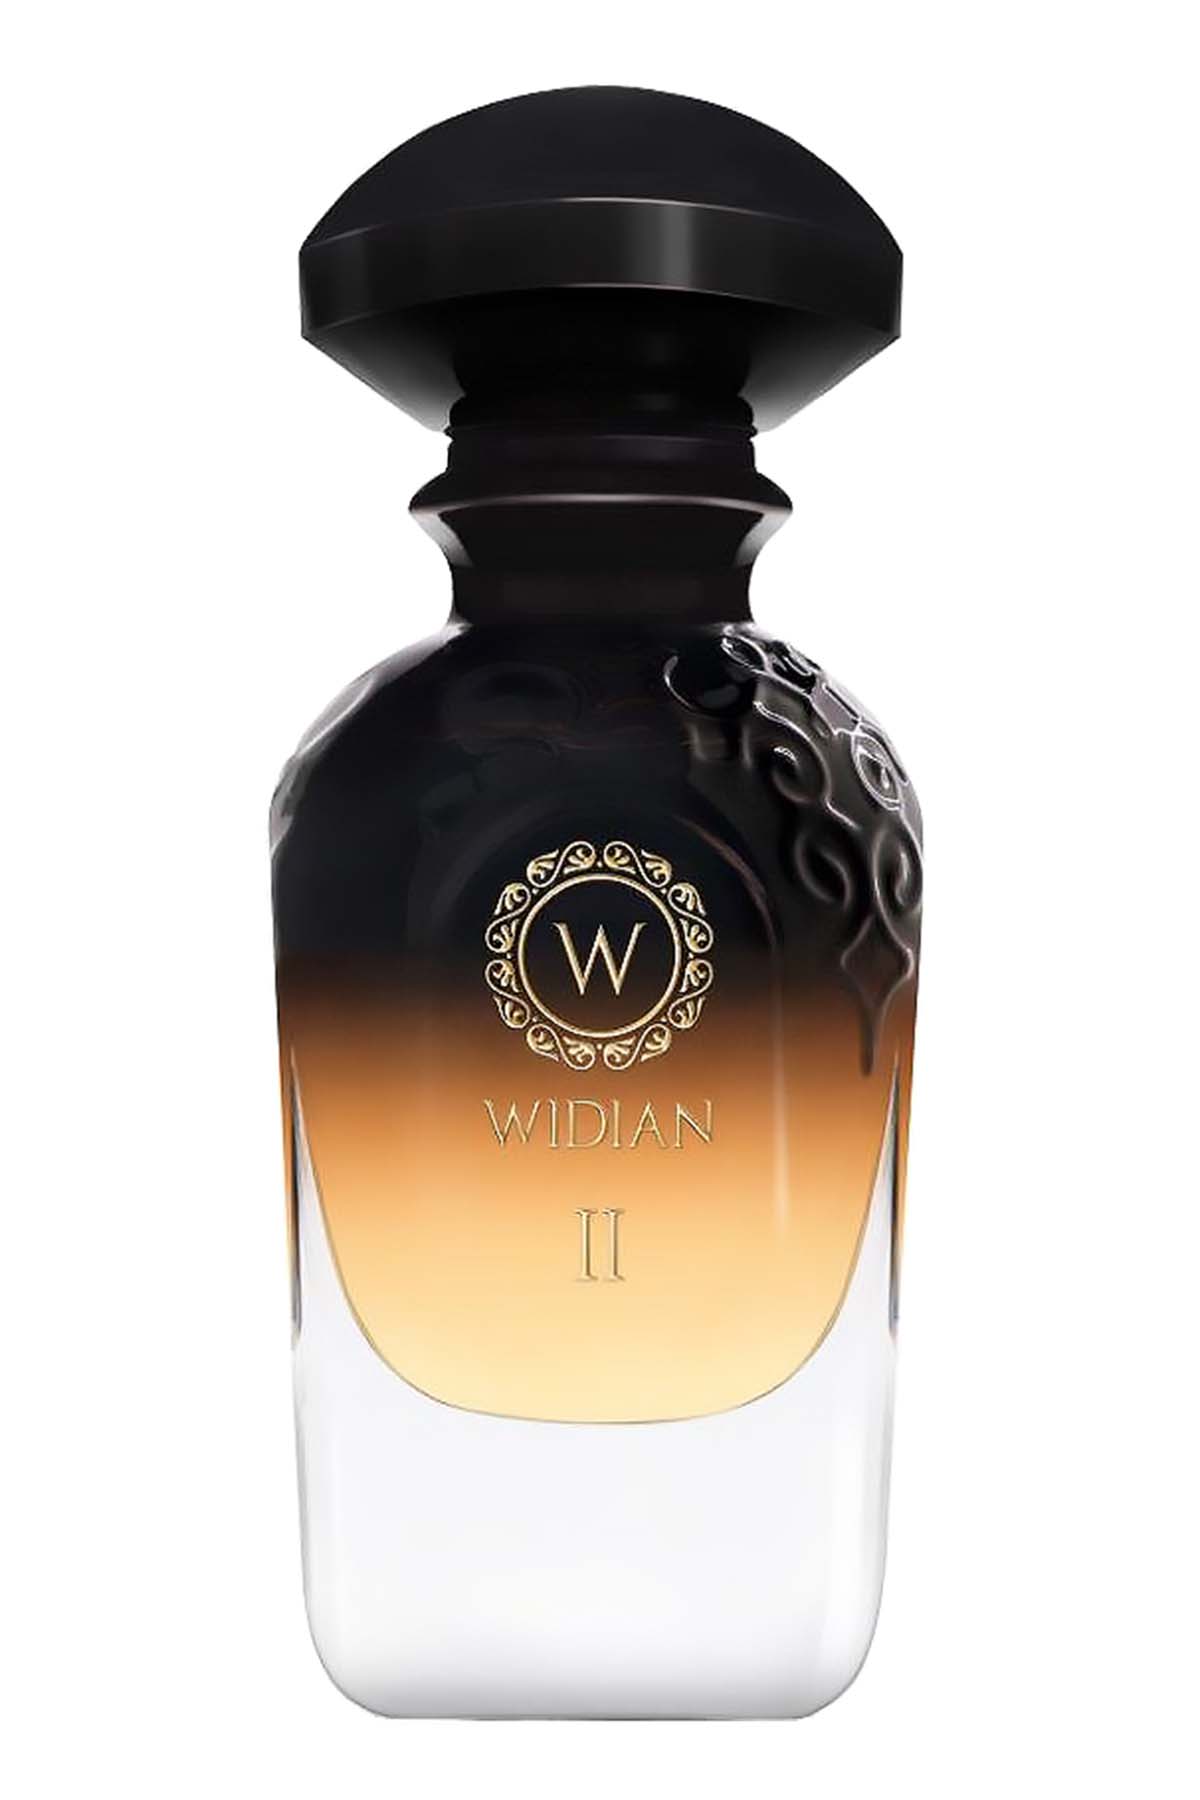 Widian Black II Extrait de Parfum